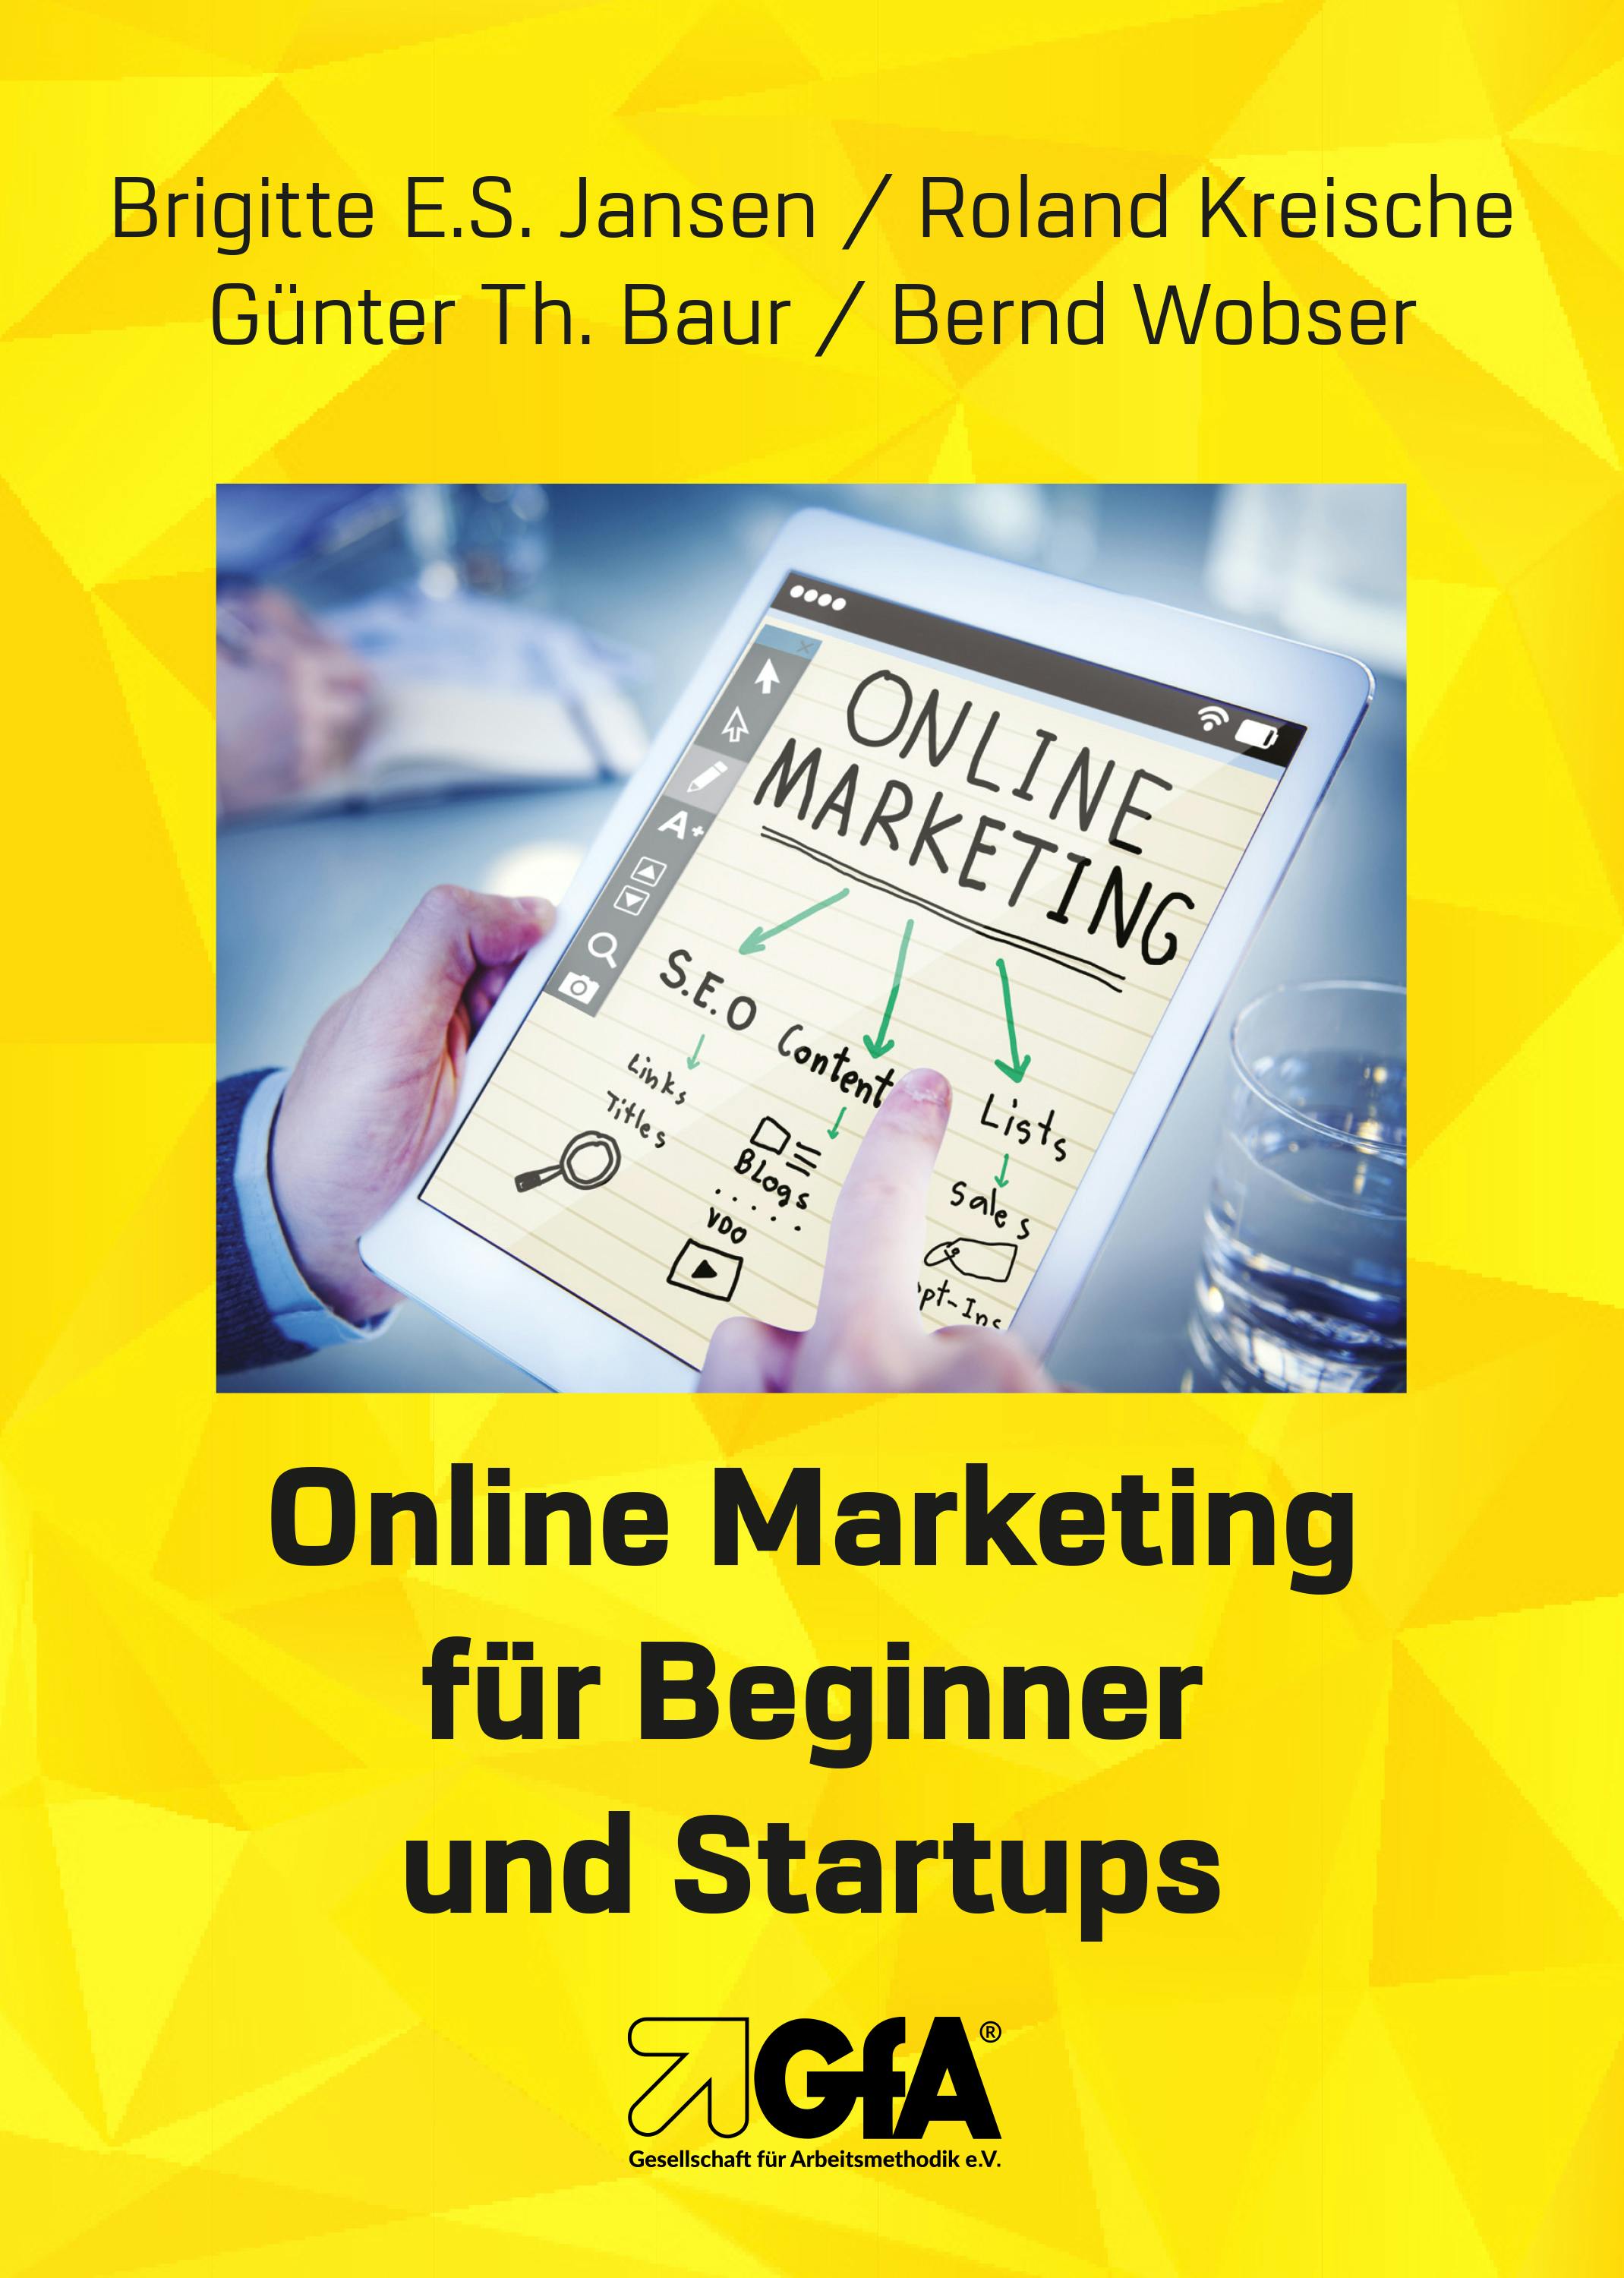 Online Marketing für Beginner und Startups - Bernd Wobser, Roland Kreische, Brigitte E.S. Jansen, Günter Th. Baur